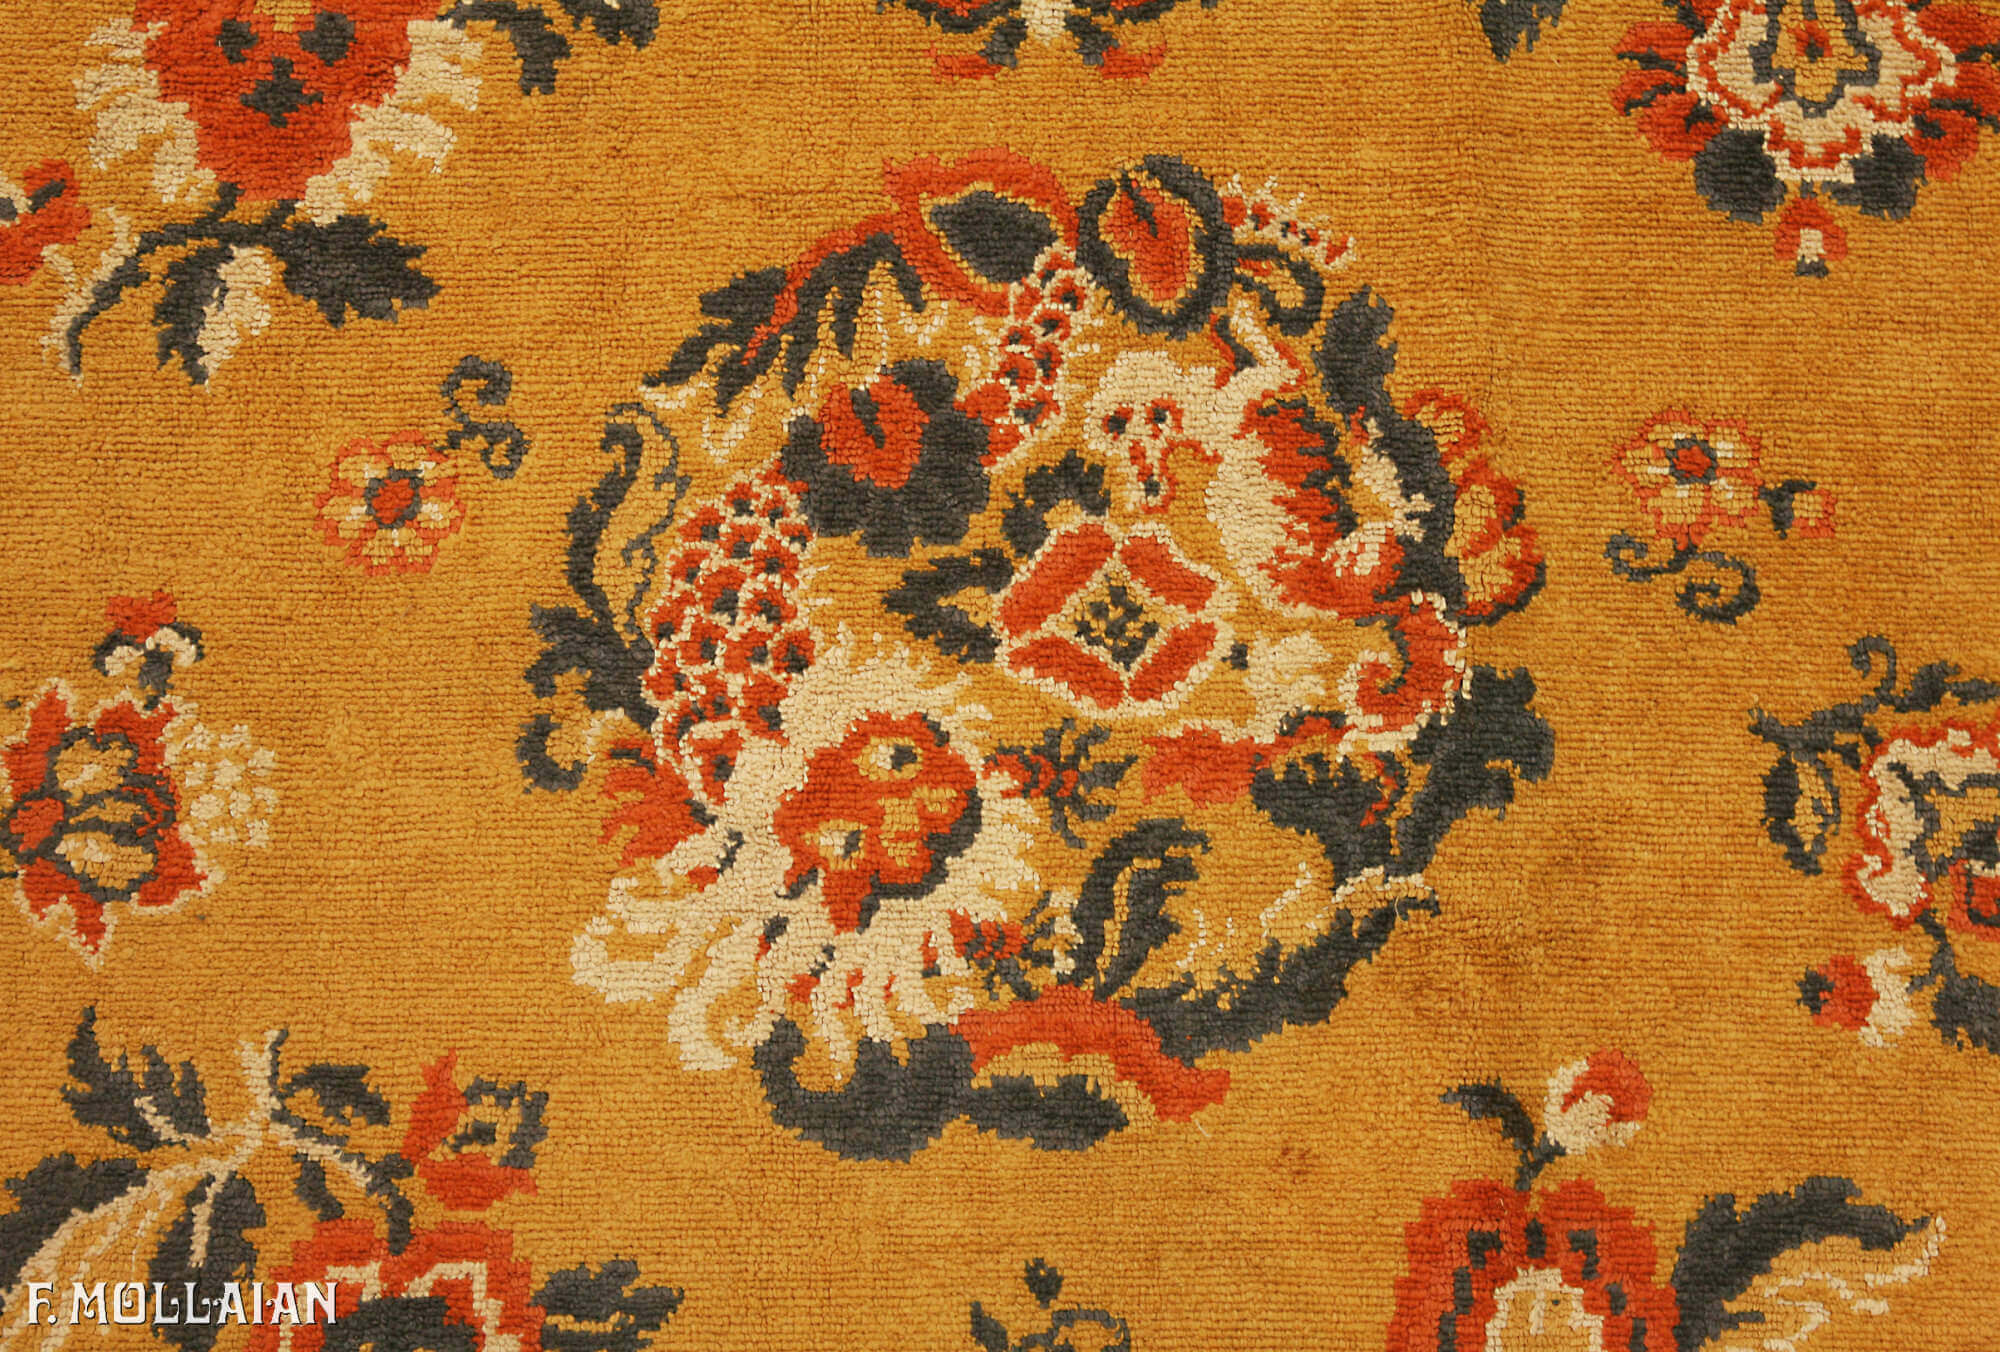 Antique Chinese Velvet Textile n°:69051685